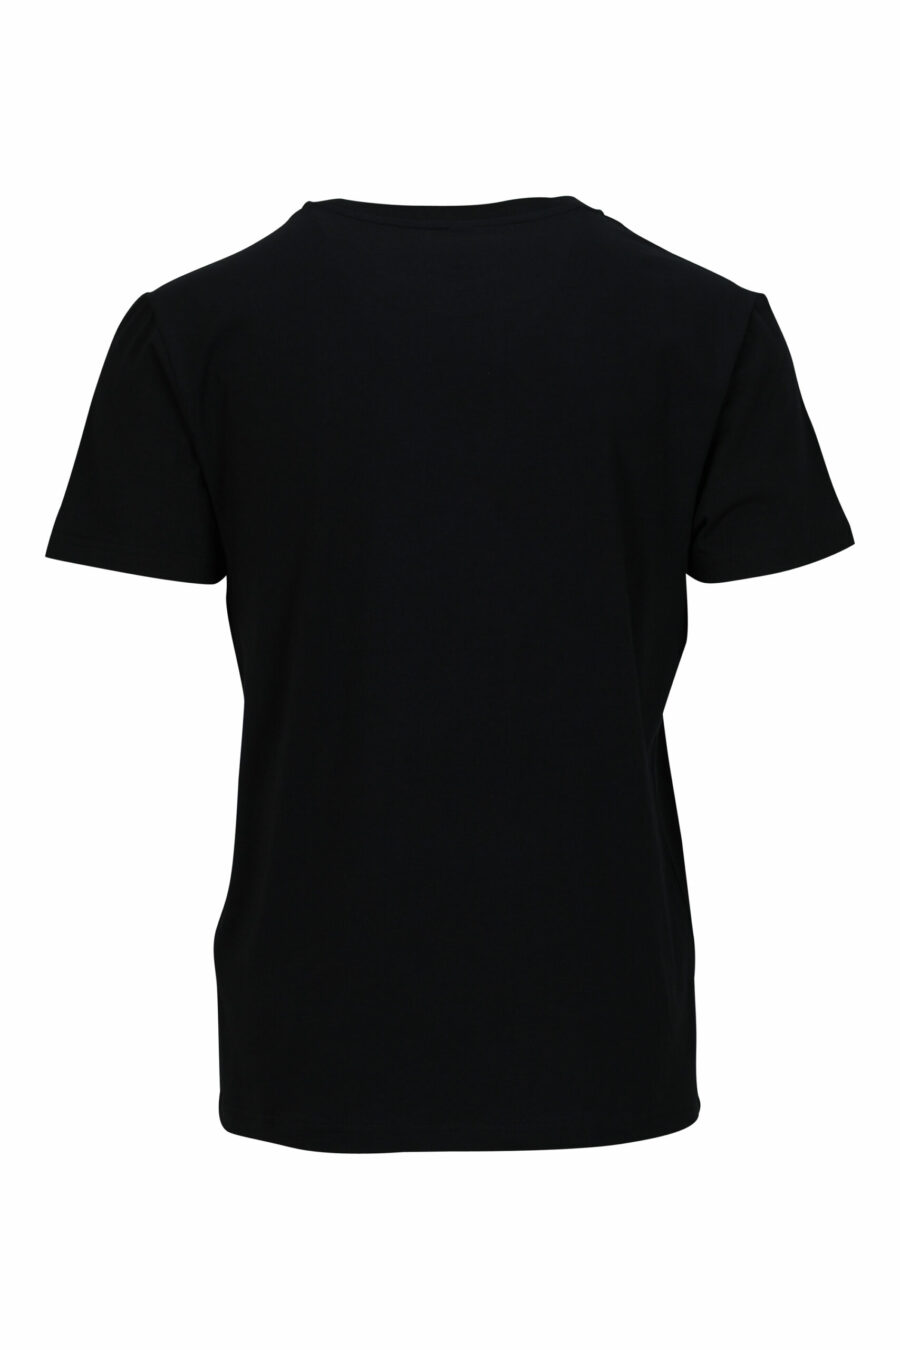 Schwarzes T-Shirt mit Minilogue "swim" - 667113673530 1 skaliert